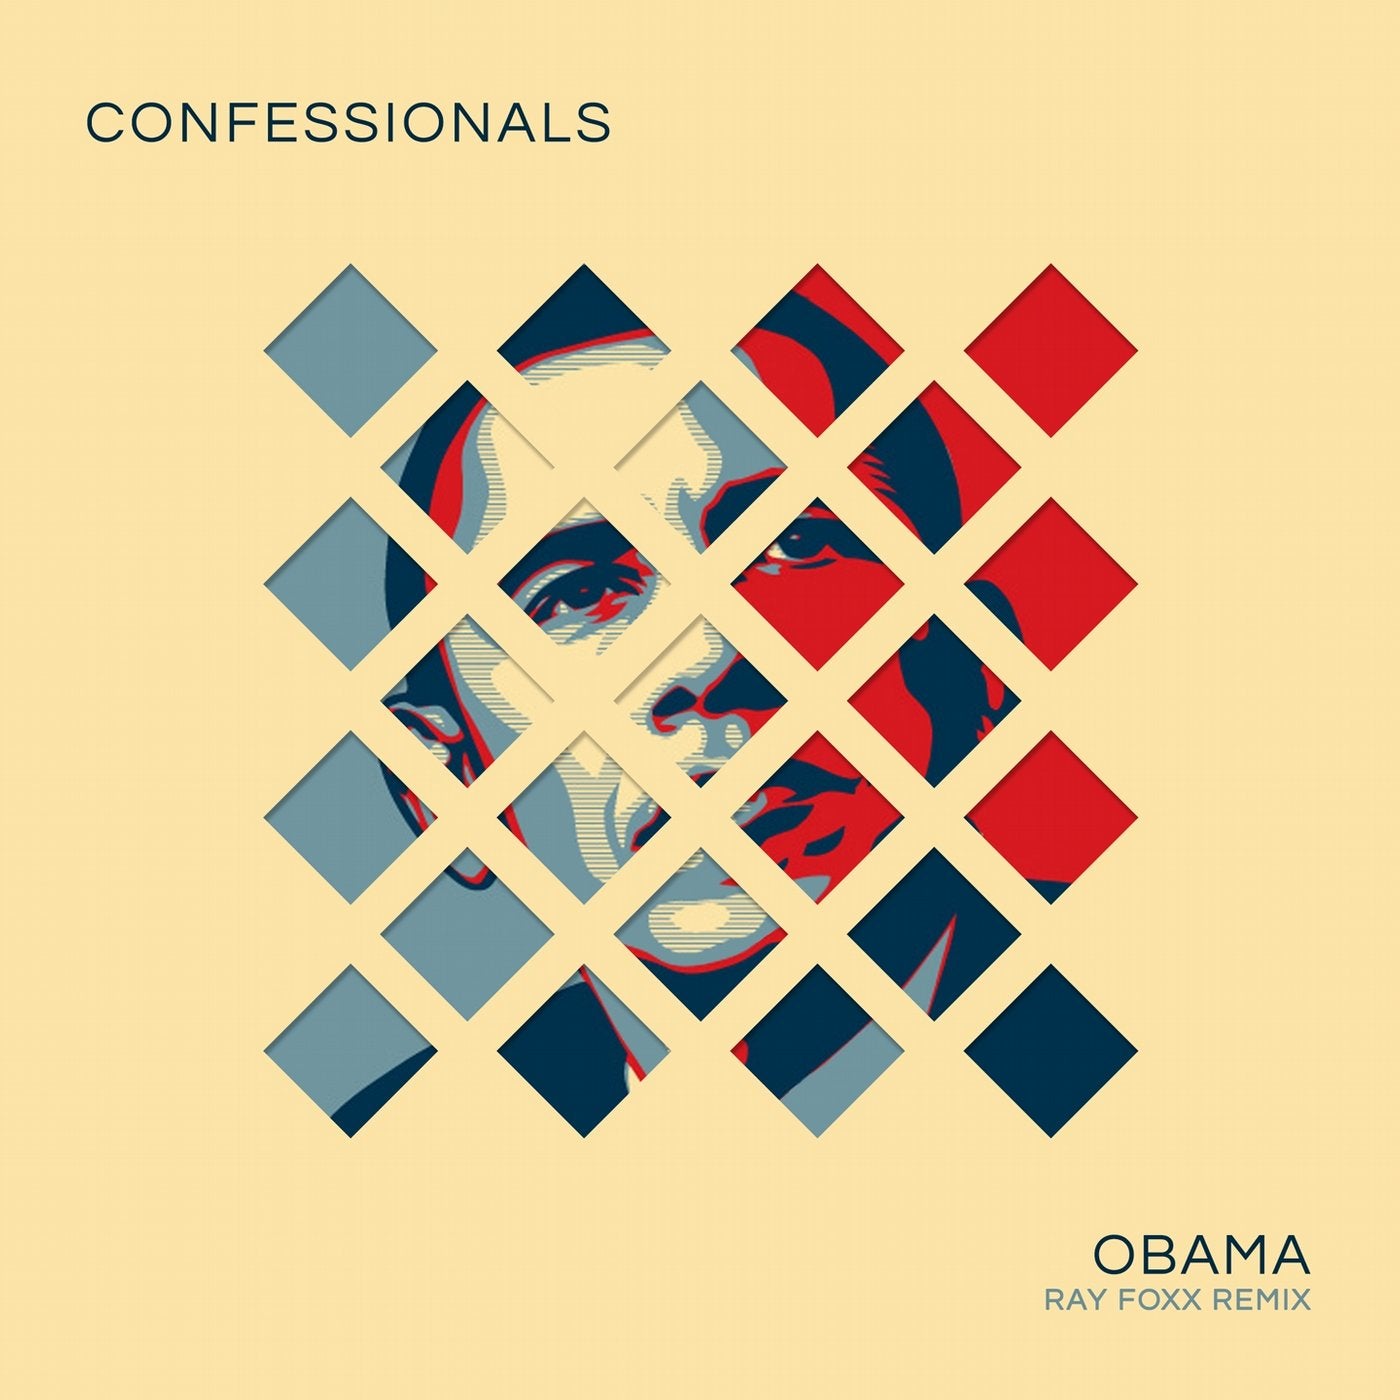 Obama (Ray Foxx Remix)